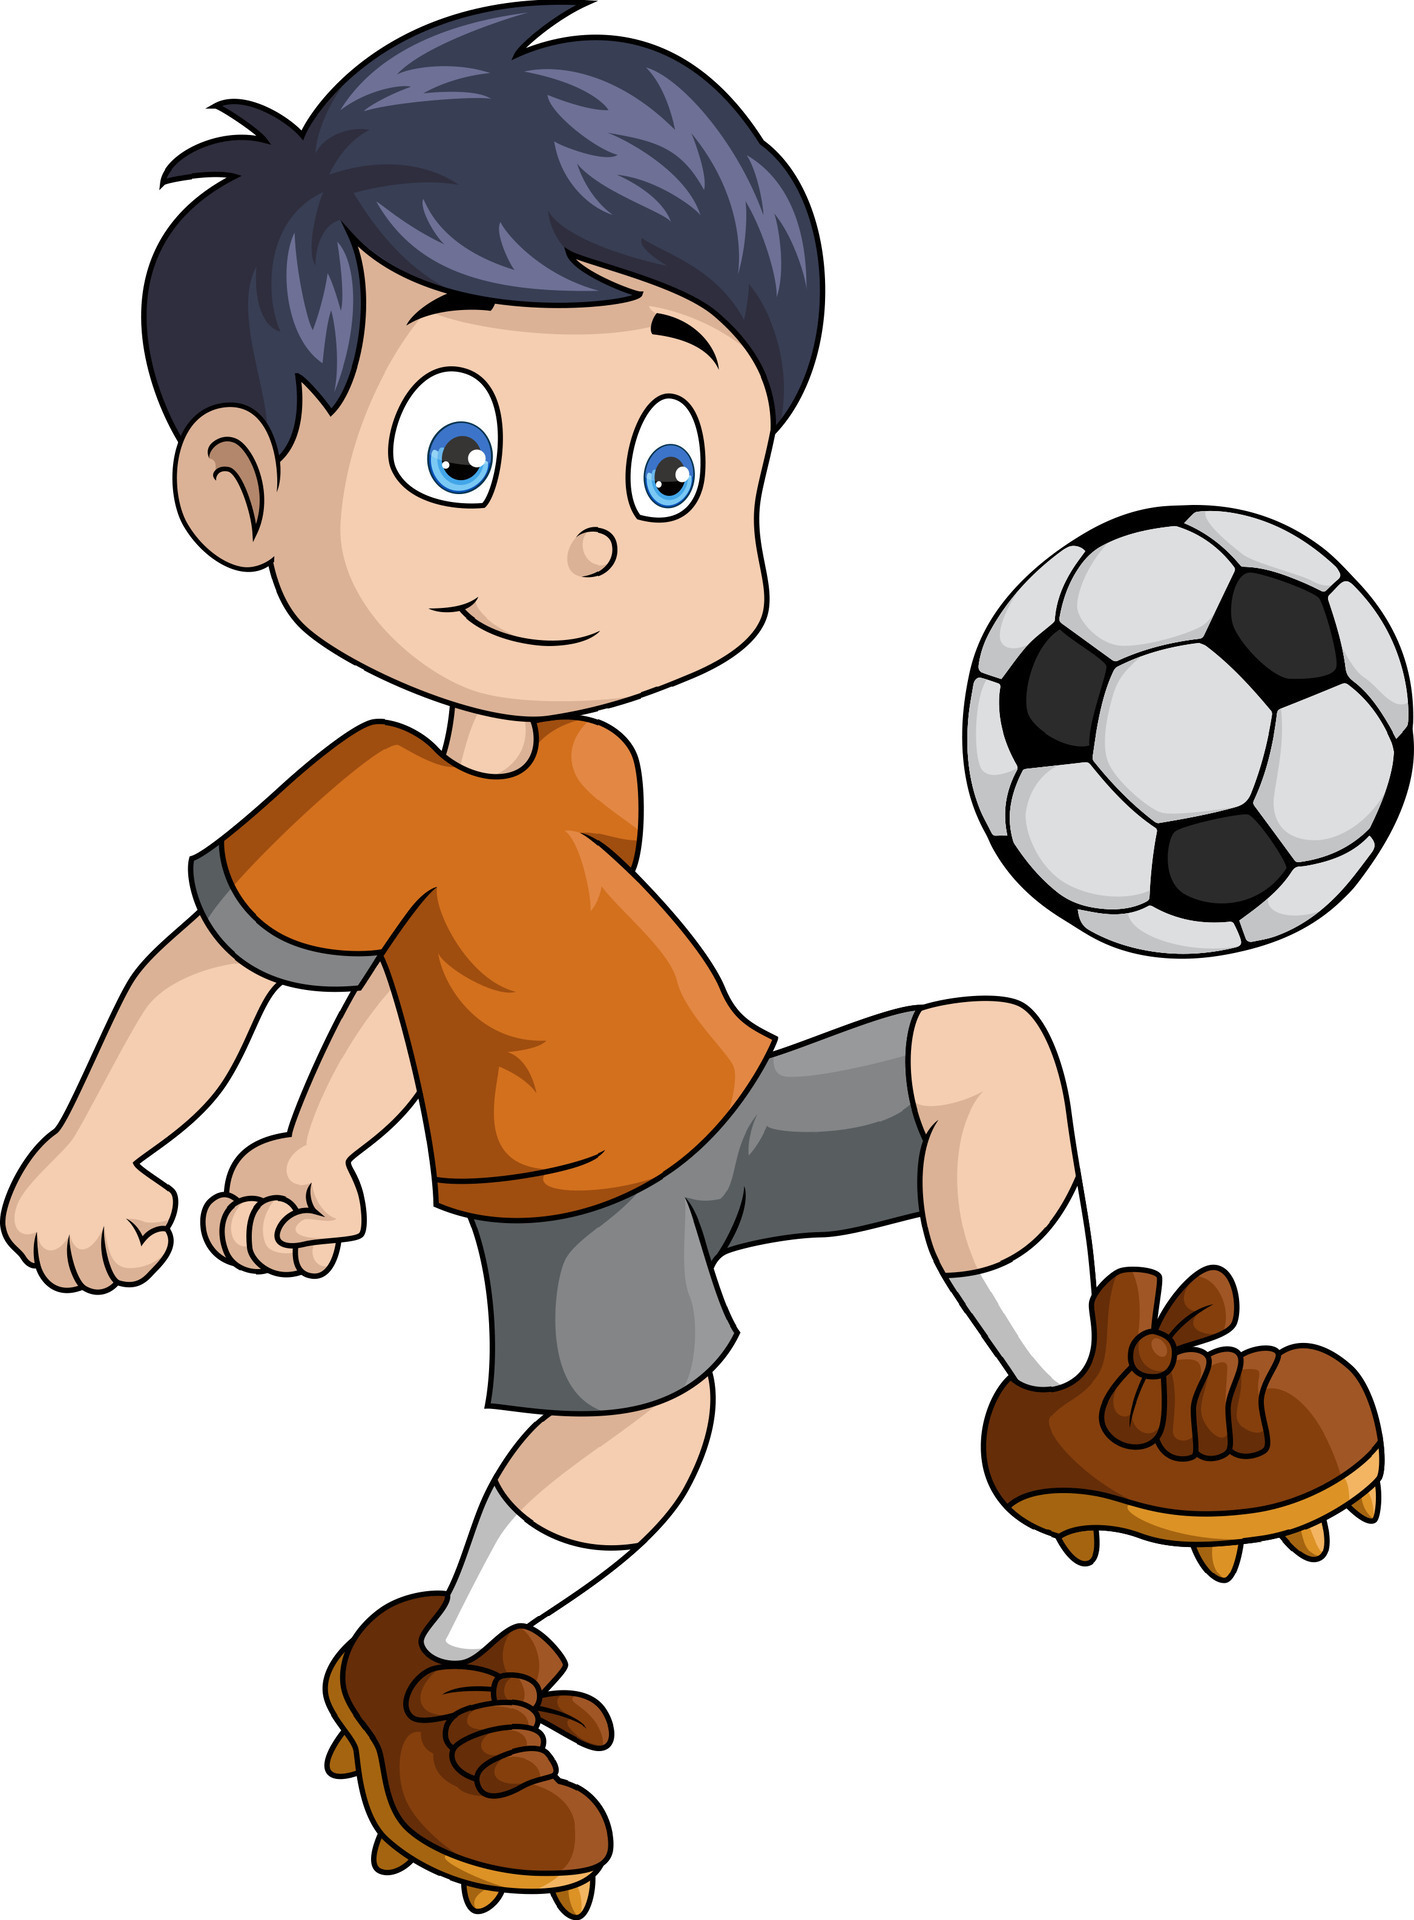 Cute little boy cartoon playing football 36772883 Vector Art at Vecteezy